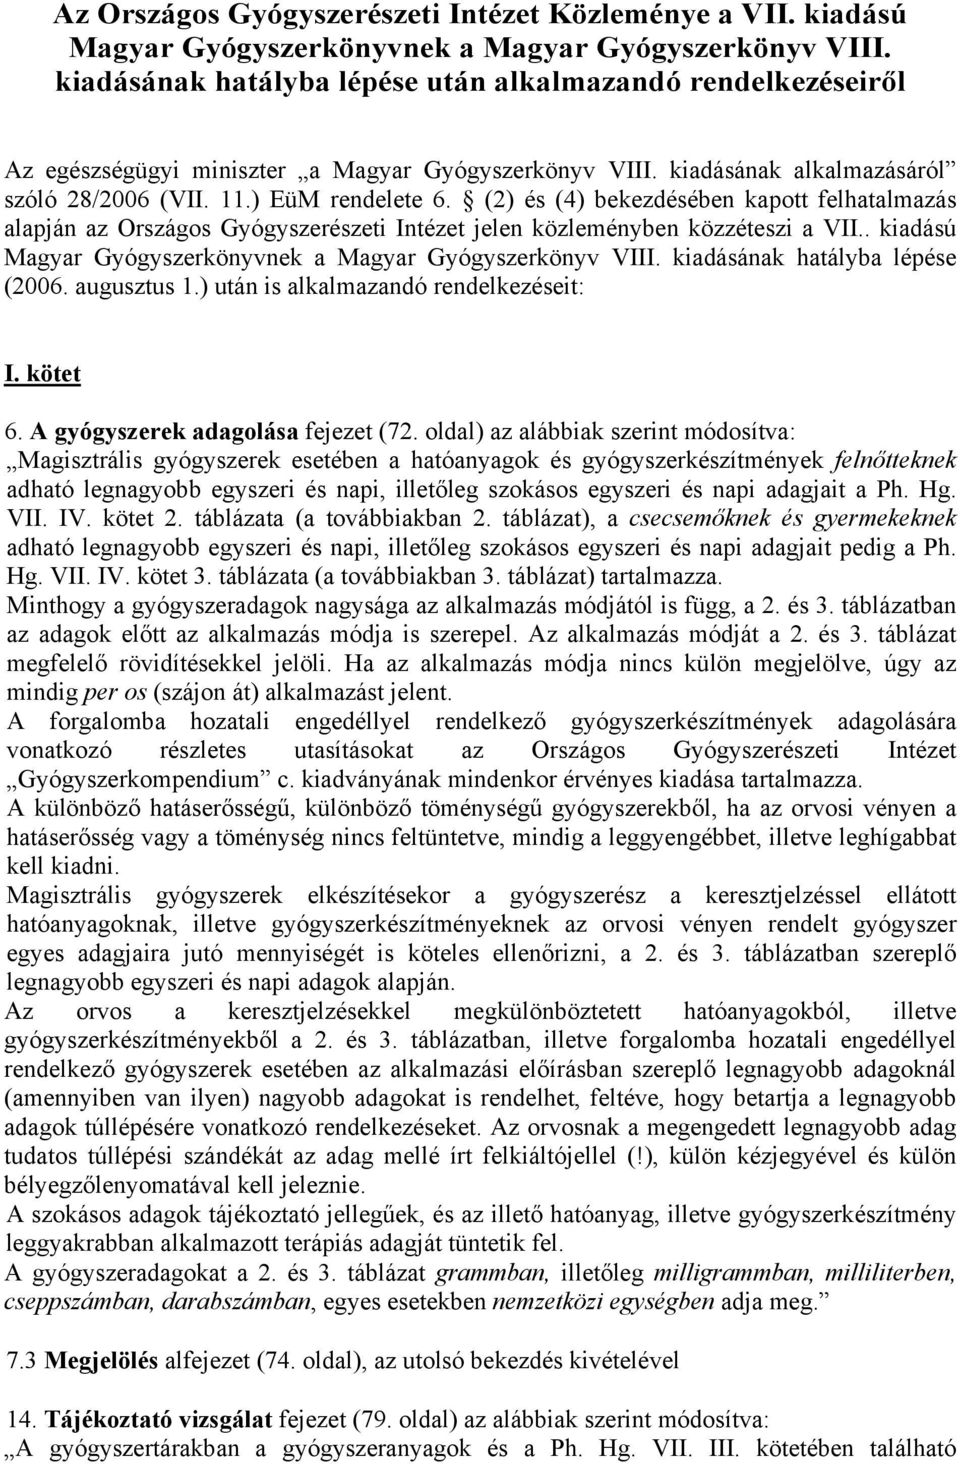 (2) és (4) bekezdésében kapott felhatalmazás alapján az Országos Gyógyszerészeti Intézet jelen közleményben közzéteszi a VII.. kiadású Magyar Gyógyszerkönyvnek a Magyar Gyógyszerkönyv VIII.